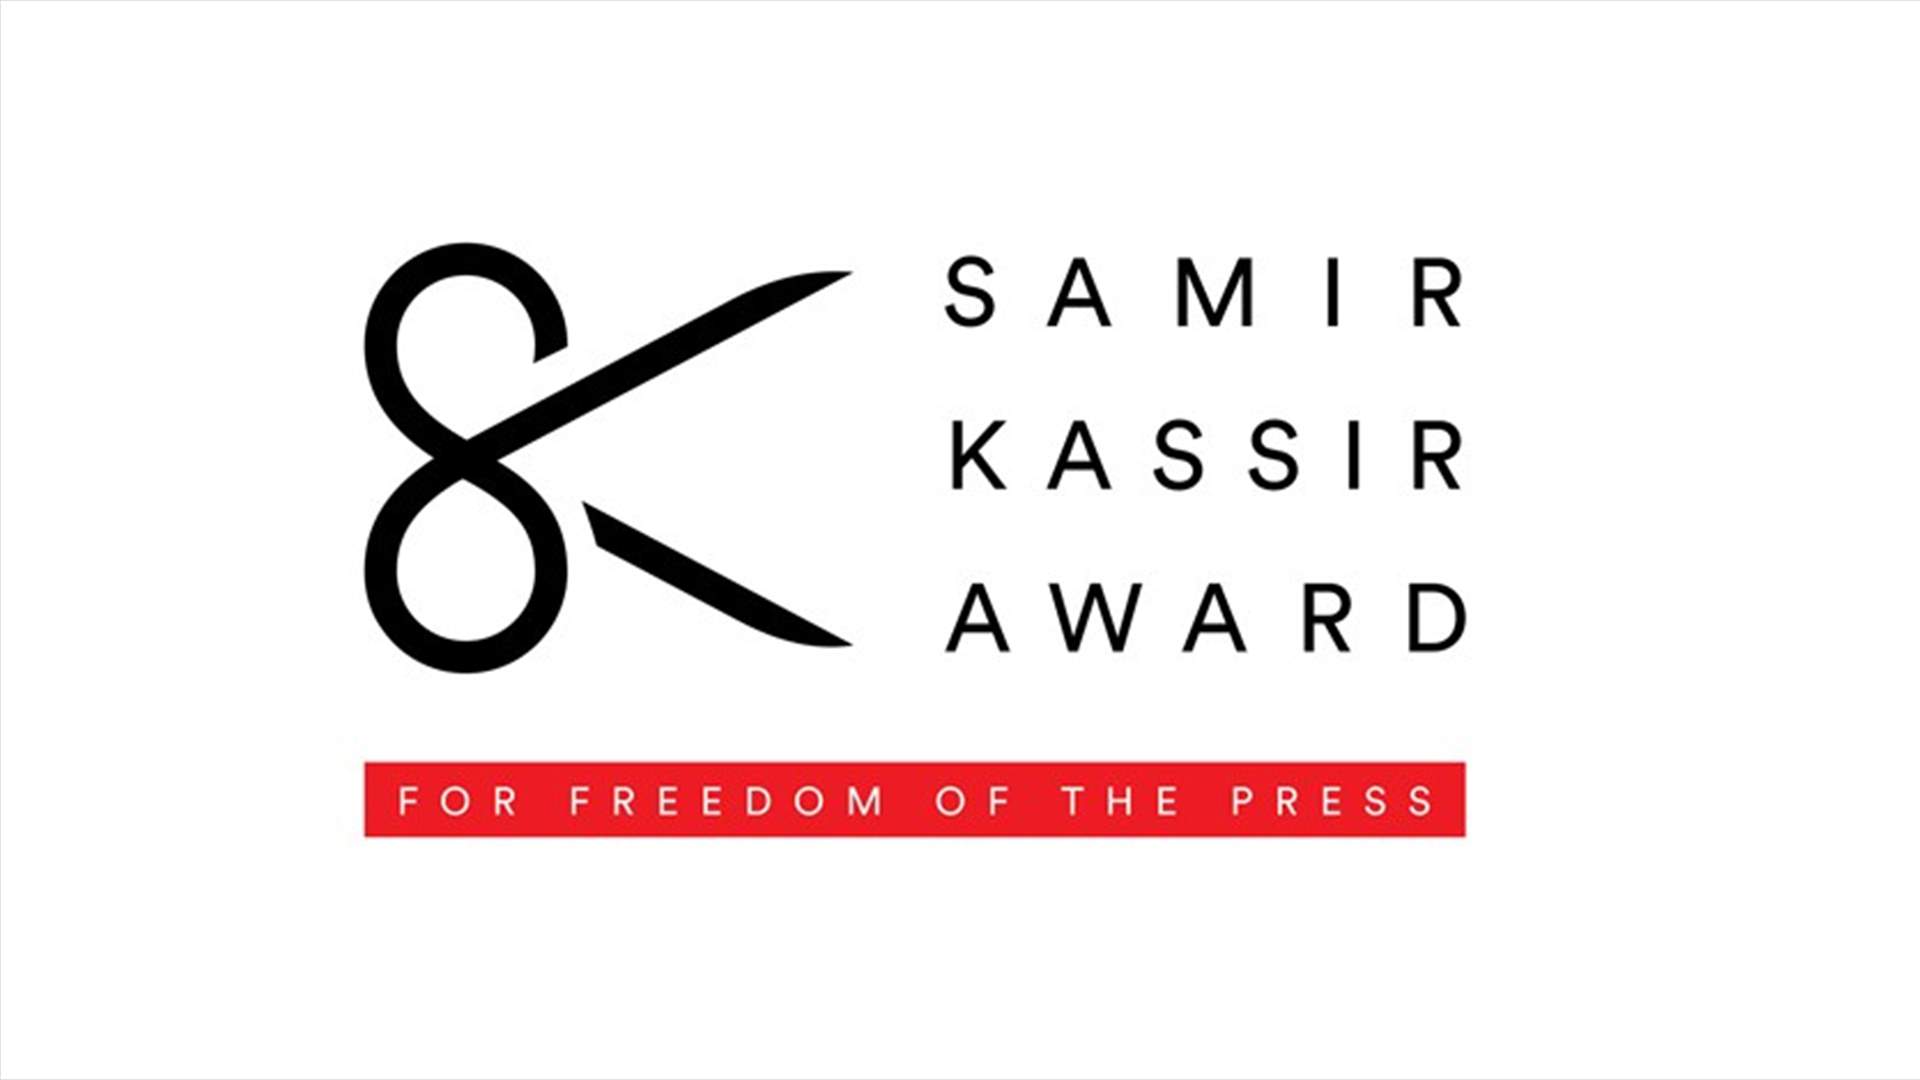 الاتحاد الأوروبي يطلق مسابقة &quot;جائزة سمير قصير لحرية الصحافة&quot; في سنتها الـ15